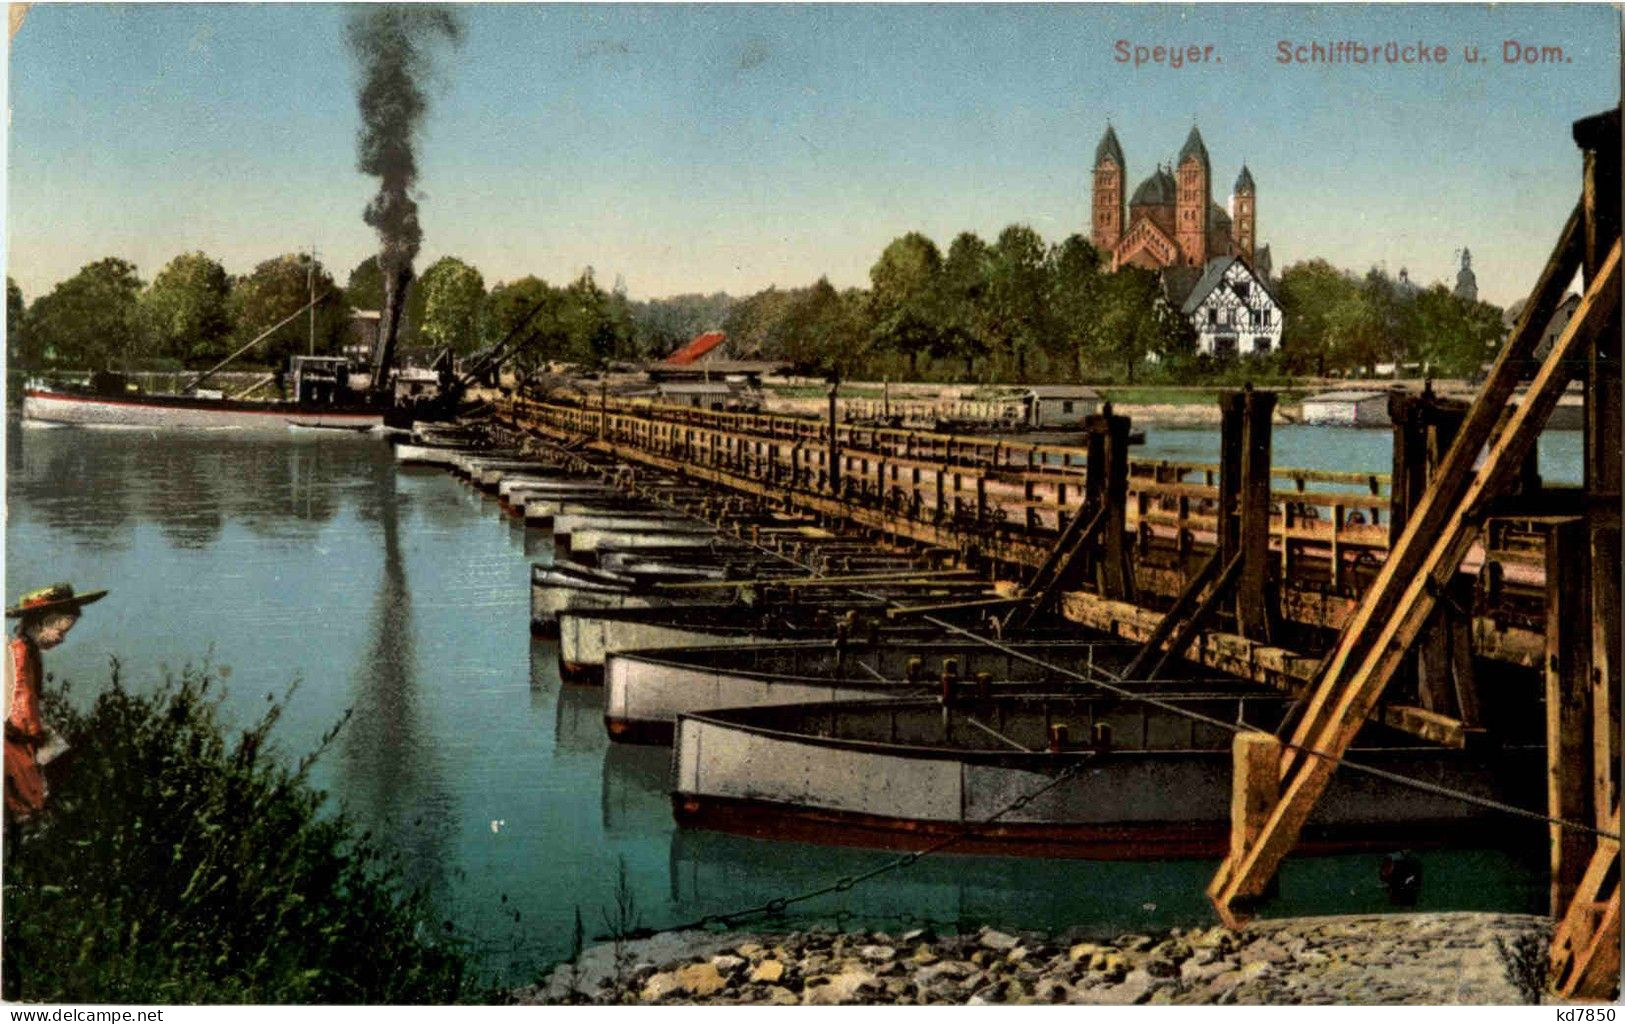 Speyer - Schiffbrücke - Speyer